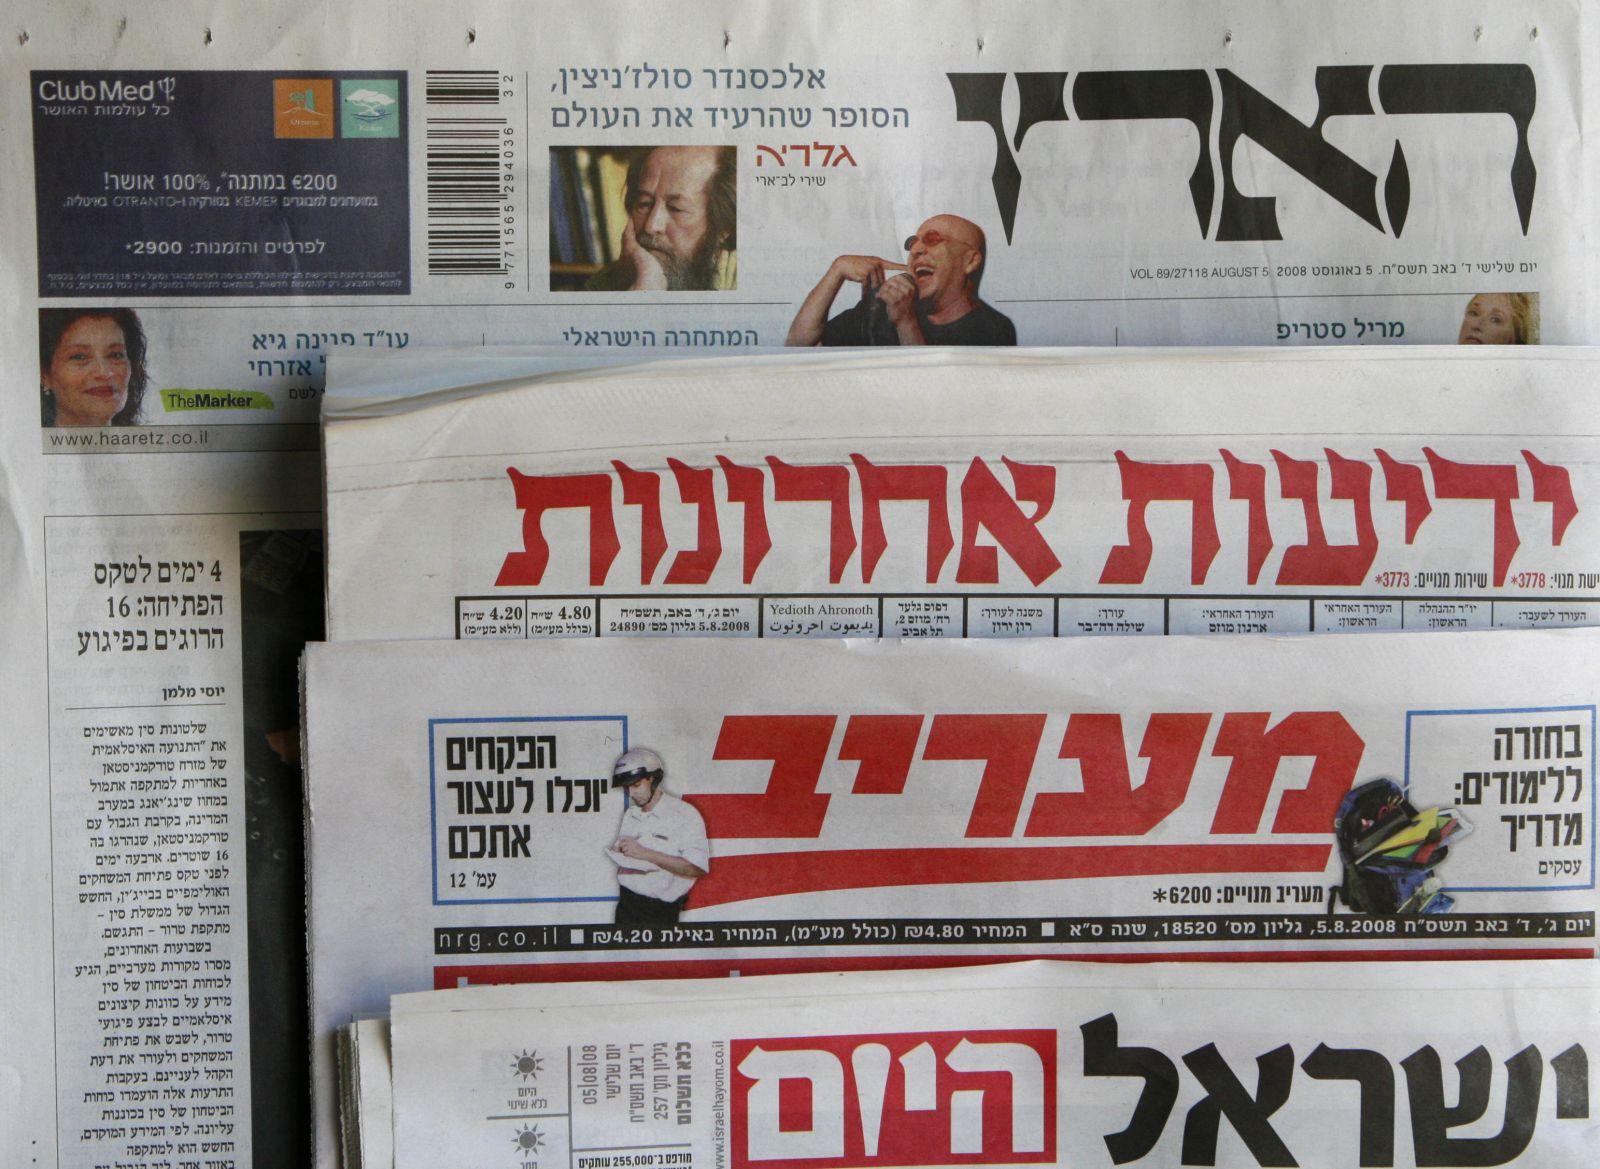 الصحافة “الإسرائيلية”: “هنية” أكثر تطرفا من مشعل.. واختياره أمر متوقع